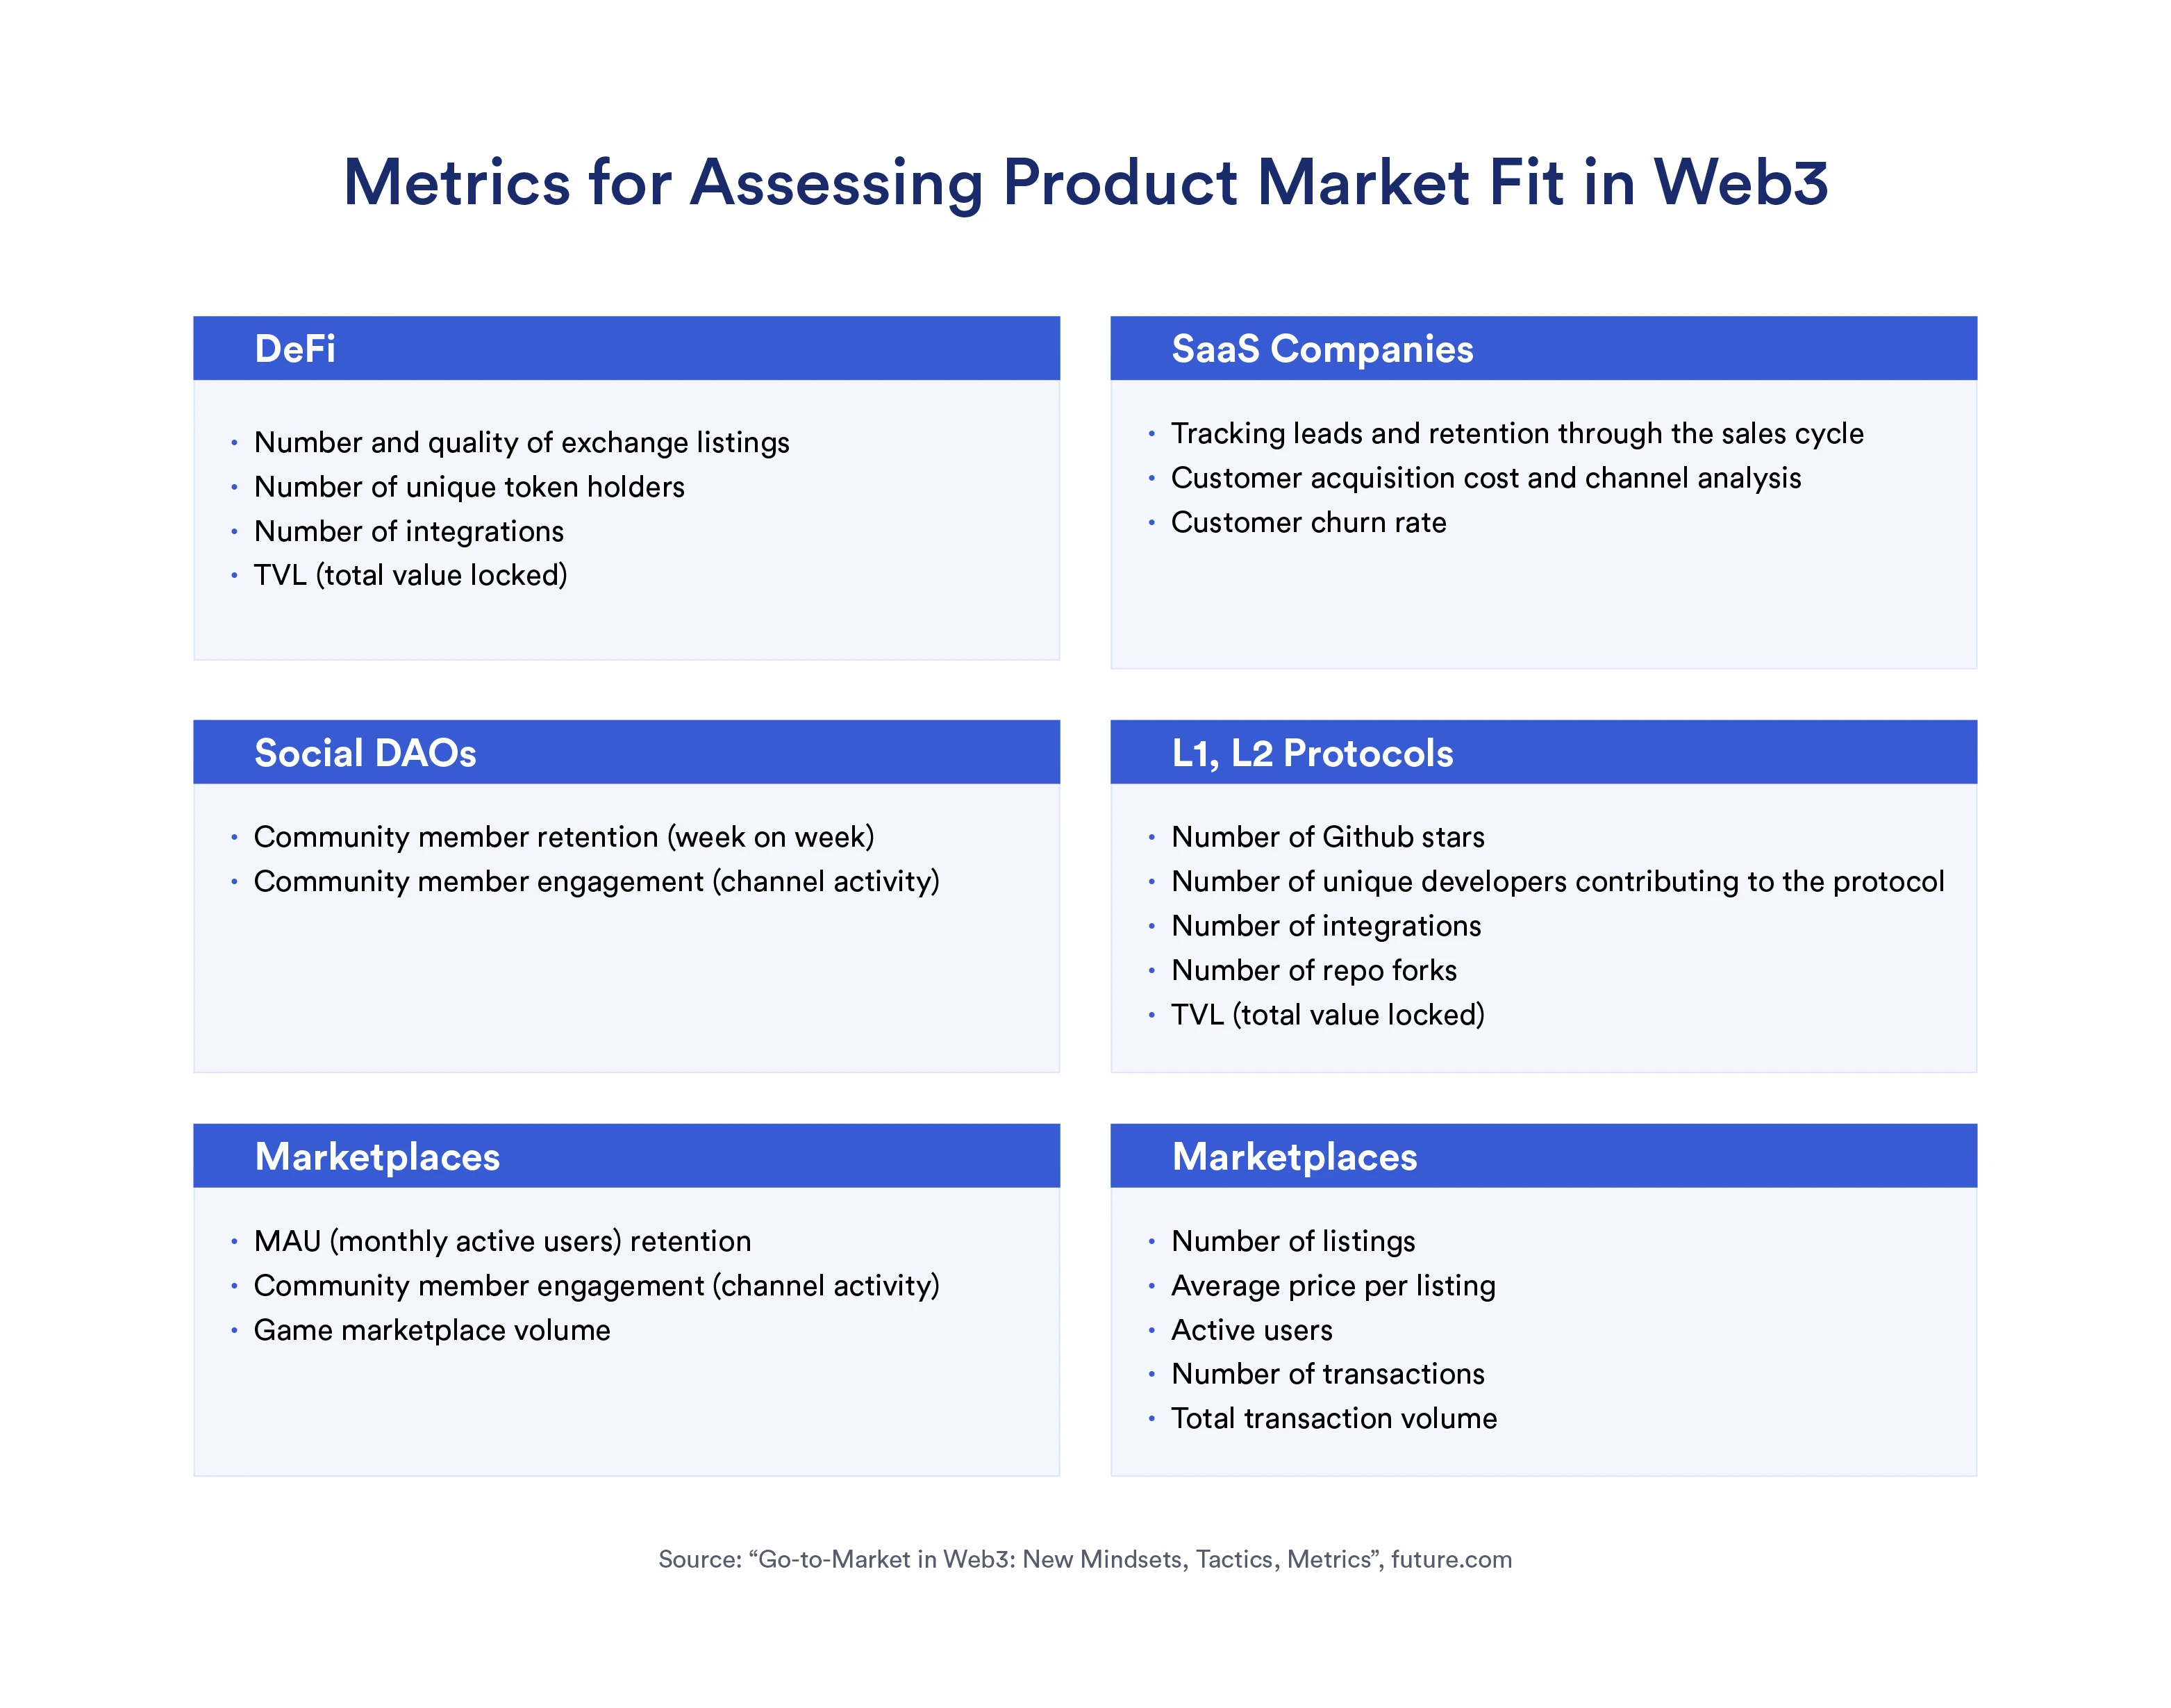 Hiểu các tiêu chí để đánh giá sự phù hợp với thị trường sản phẩm Web3 và các hoạt động tiếp theo trong một bài viết